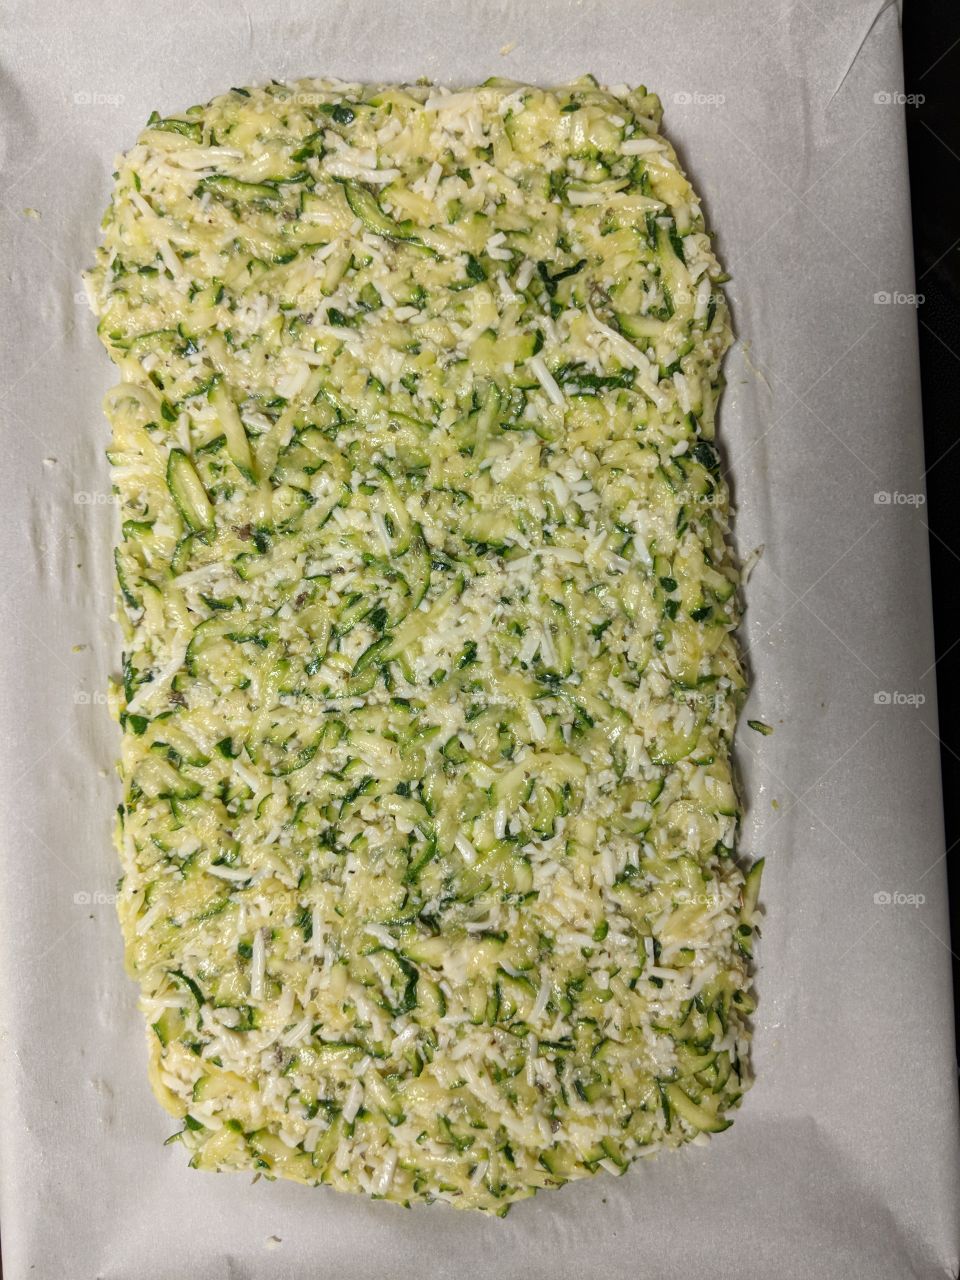 Pre-Baked Zucchini cheesy "bread"